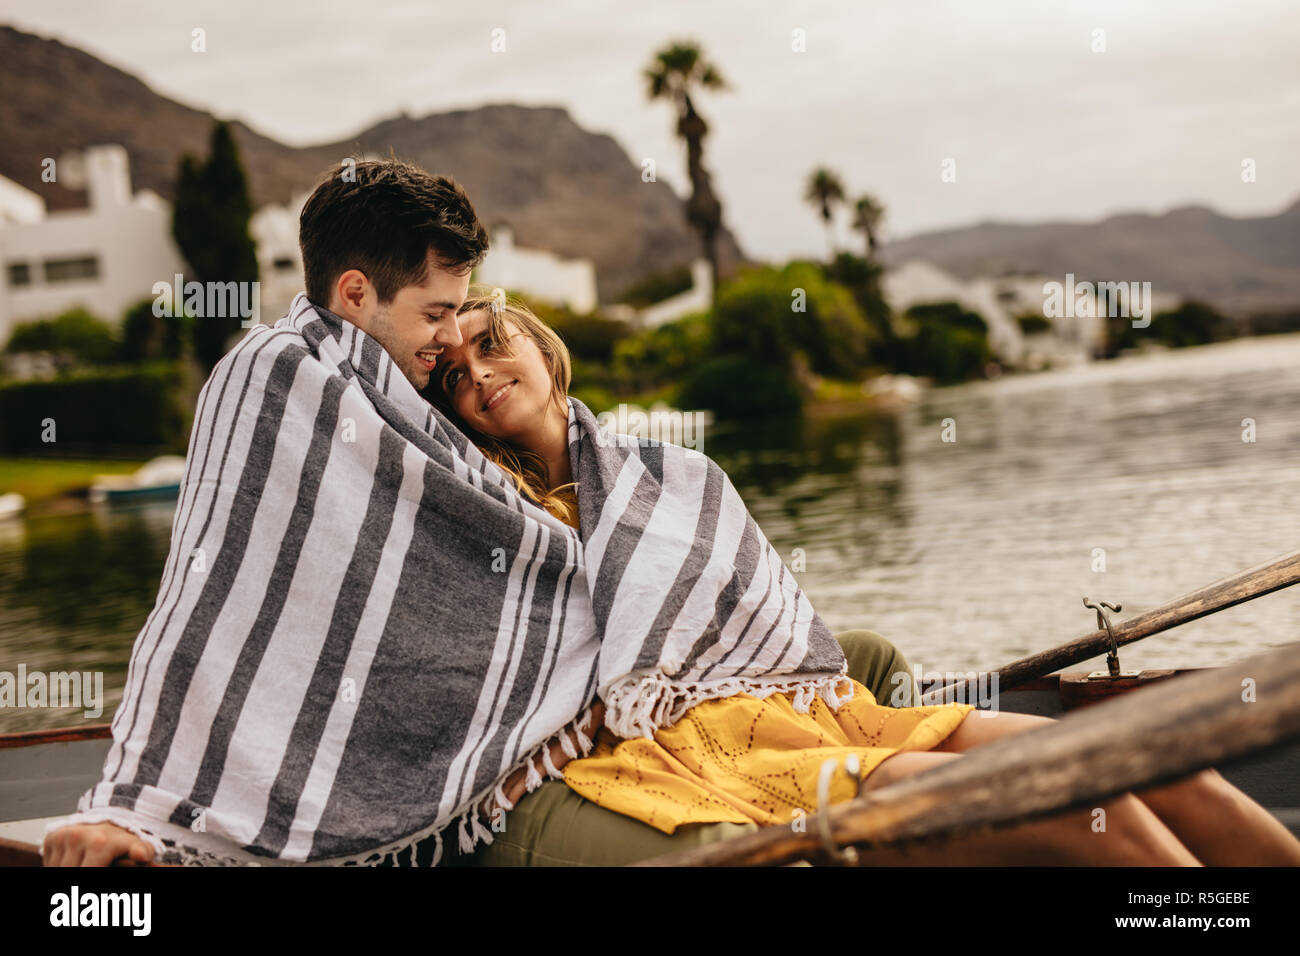 Giovane uomo e donna in amore seduti in barca insieme avvolto in un asciugamano. Coppia romantica su una barca data in un lago guardando a vicenda con amore. Foto Stock